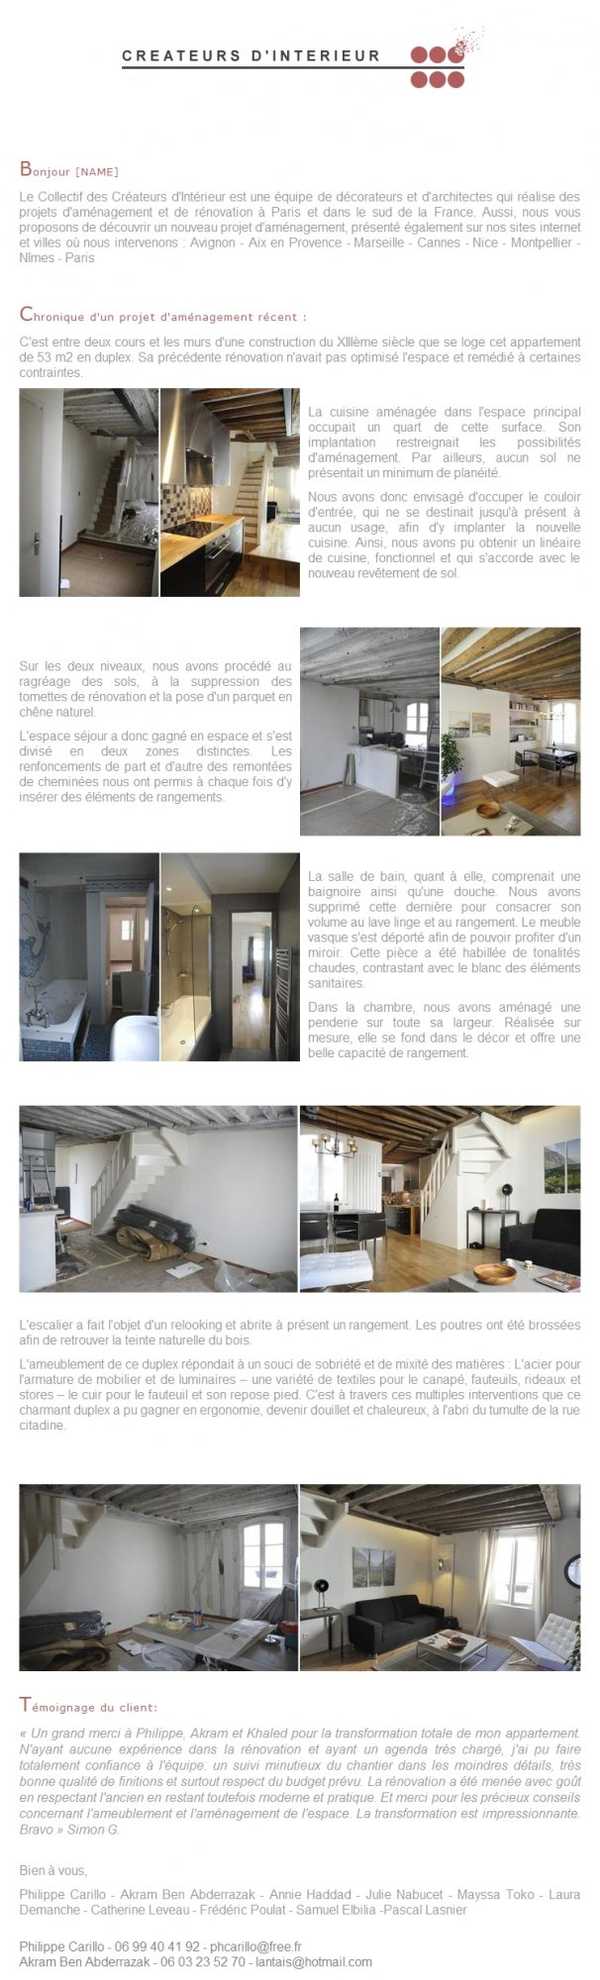 Newsletter de novembre 2011 sur la rénovation d'un appartement en duplex de 53m2 par un architecture d'intérieur.